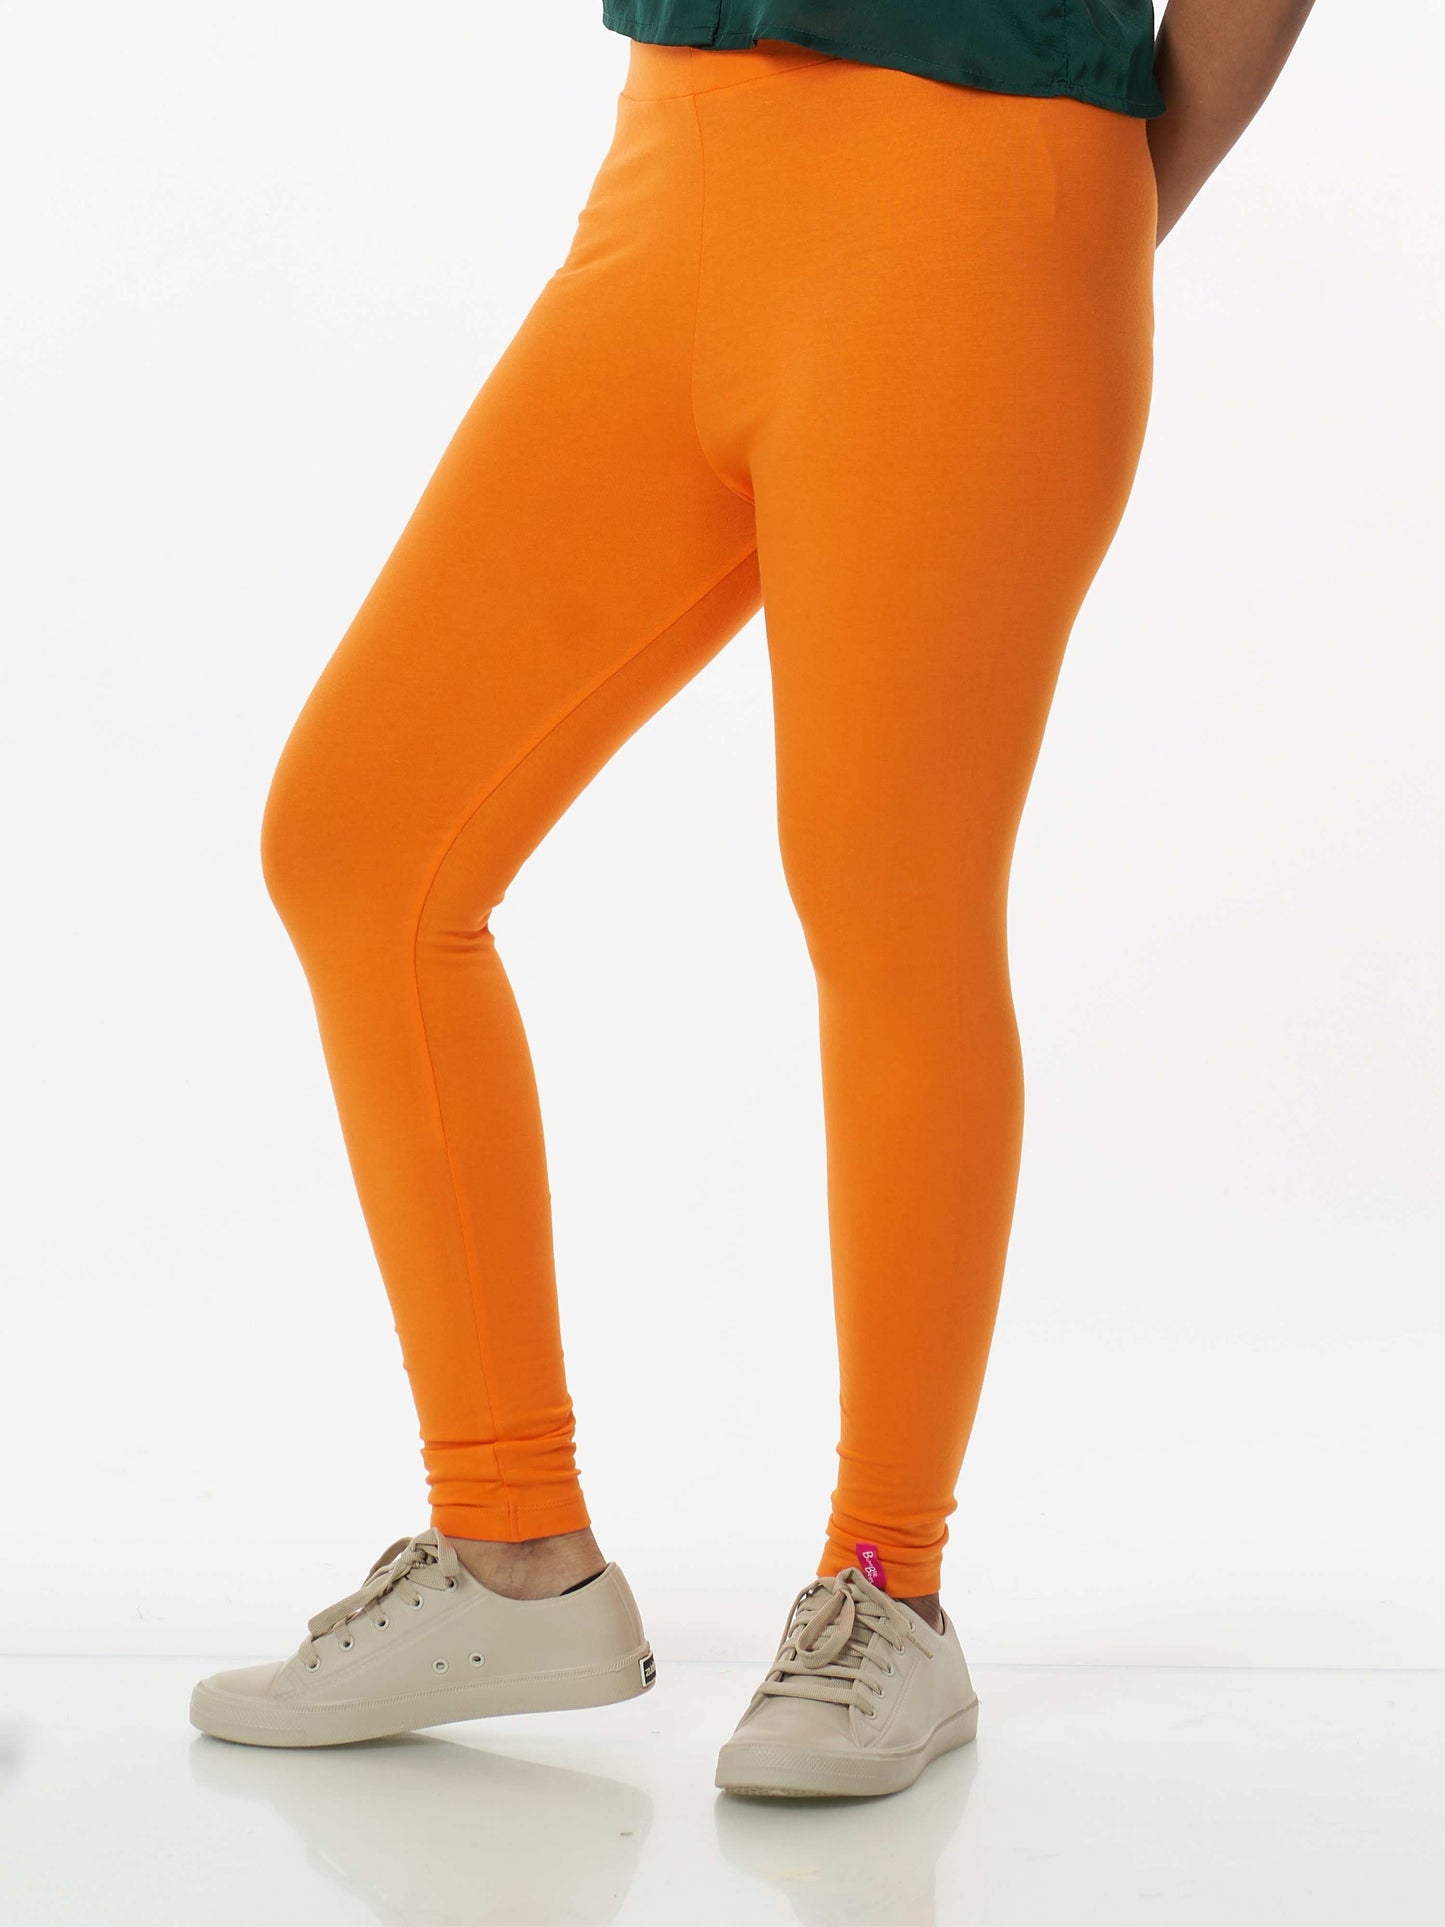 Women's premium full length Stretchy Leggings - Orange